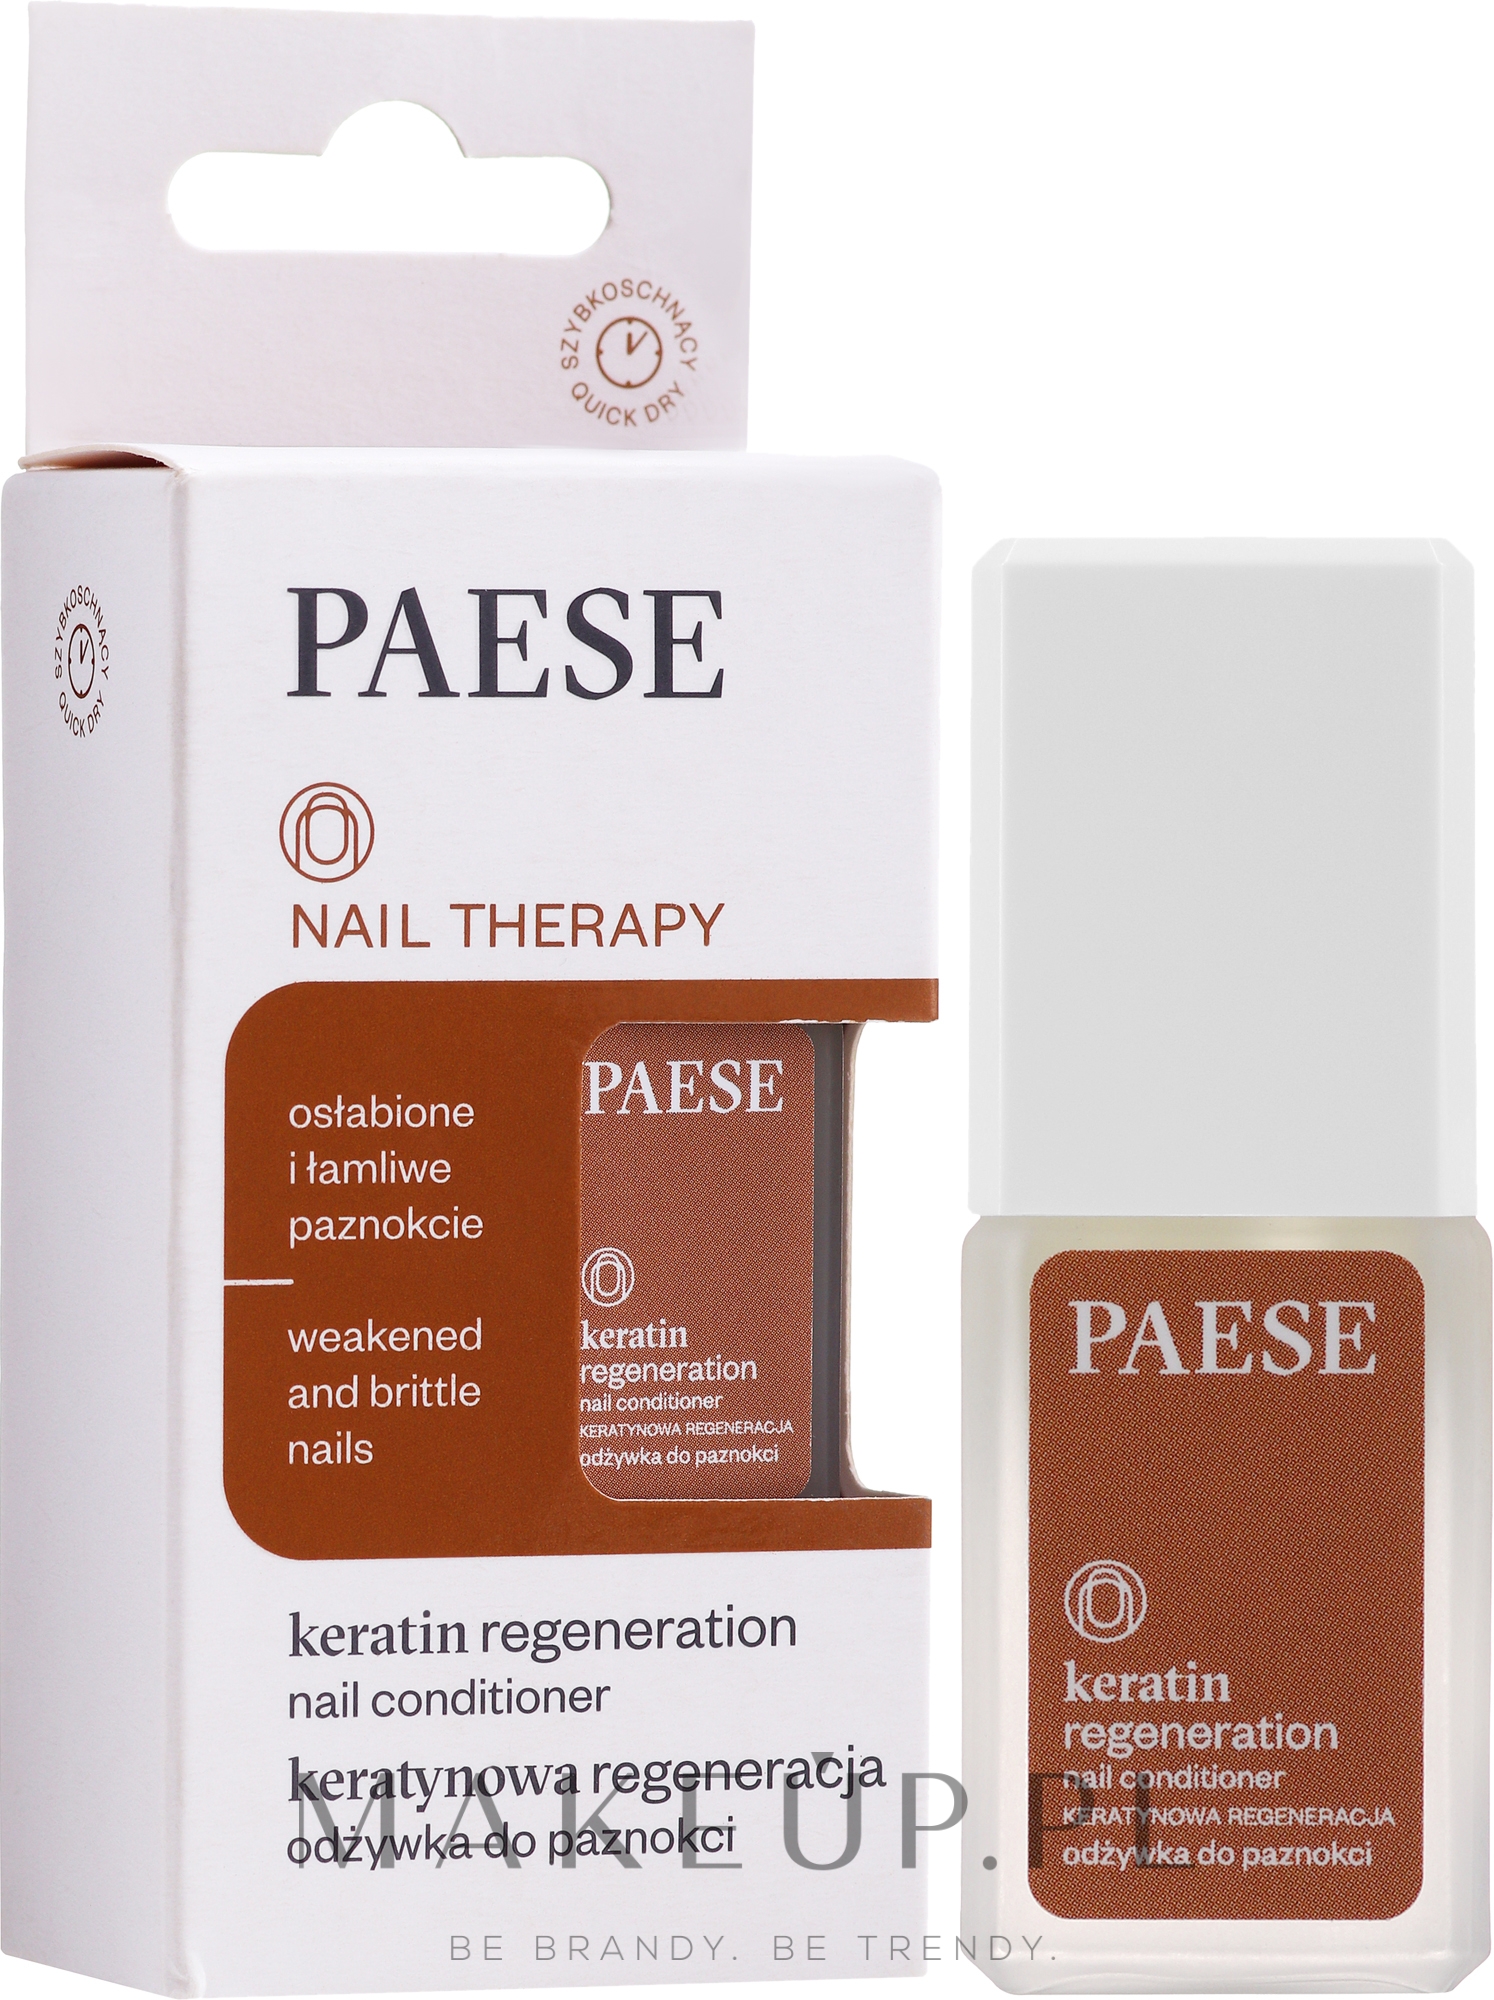 Odżywka do paznokci - Paese Nail Therapy Keratin Regeneration Nail Conditioner — Zdjęcie 8 ml